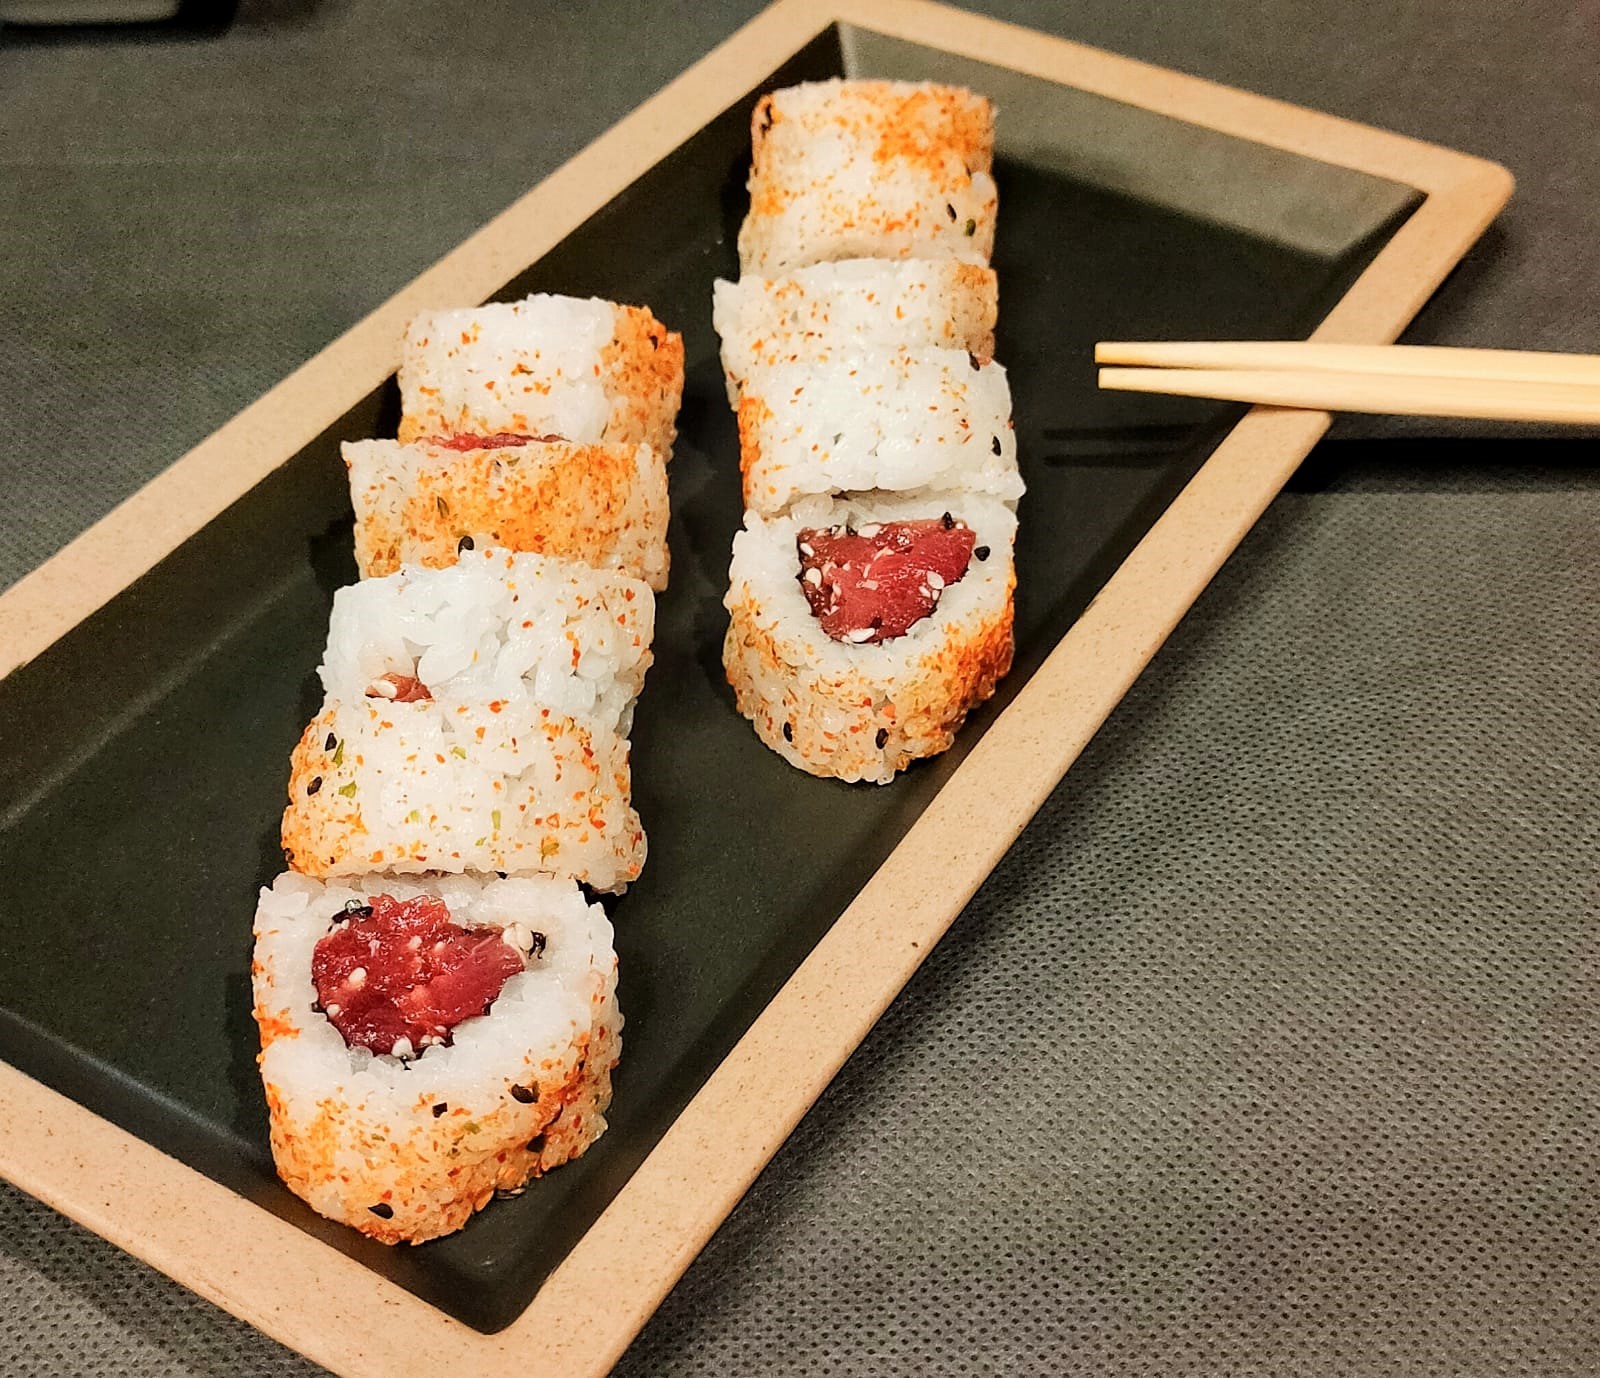 Sabías que el uramaki de atún picante («spicy tuna») es una de las recetas más populares de sushi.